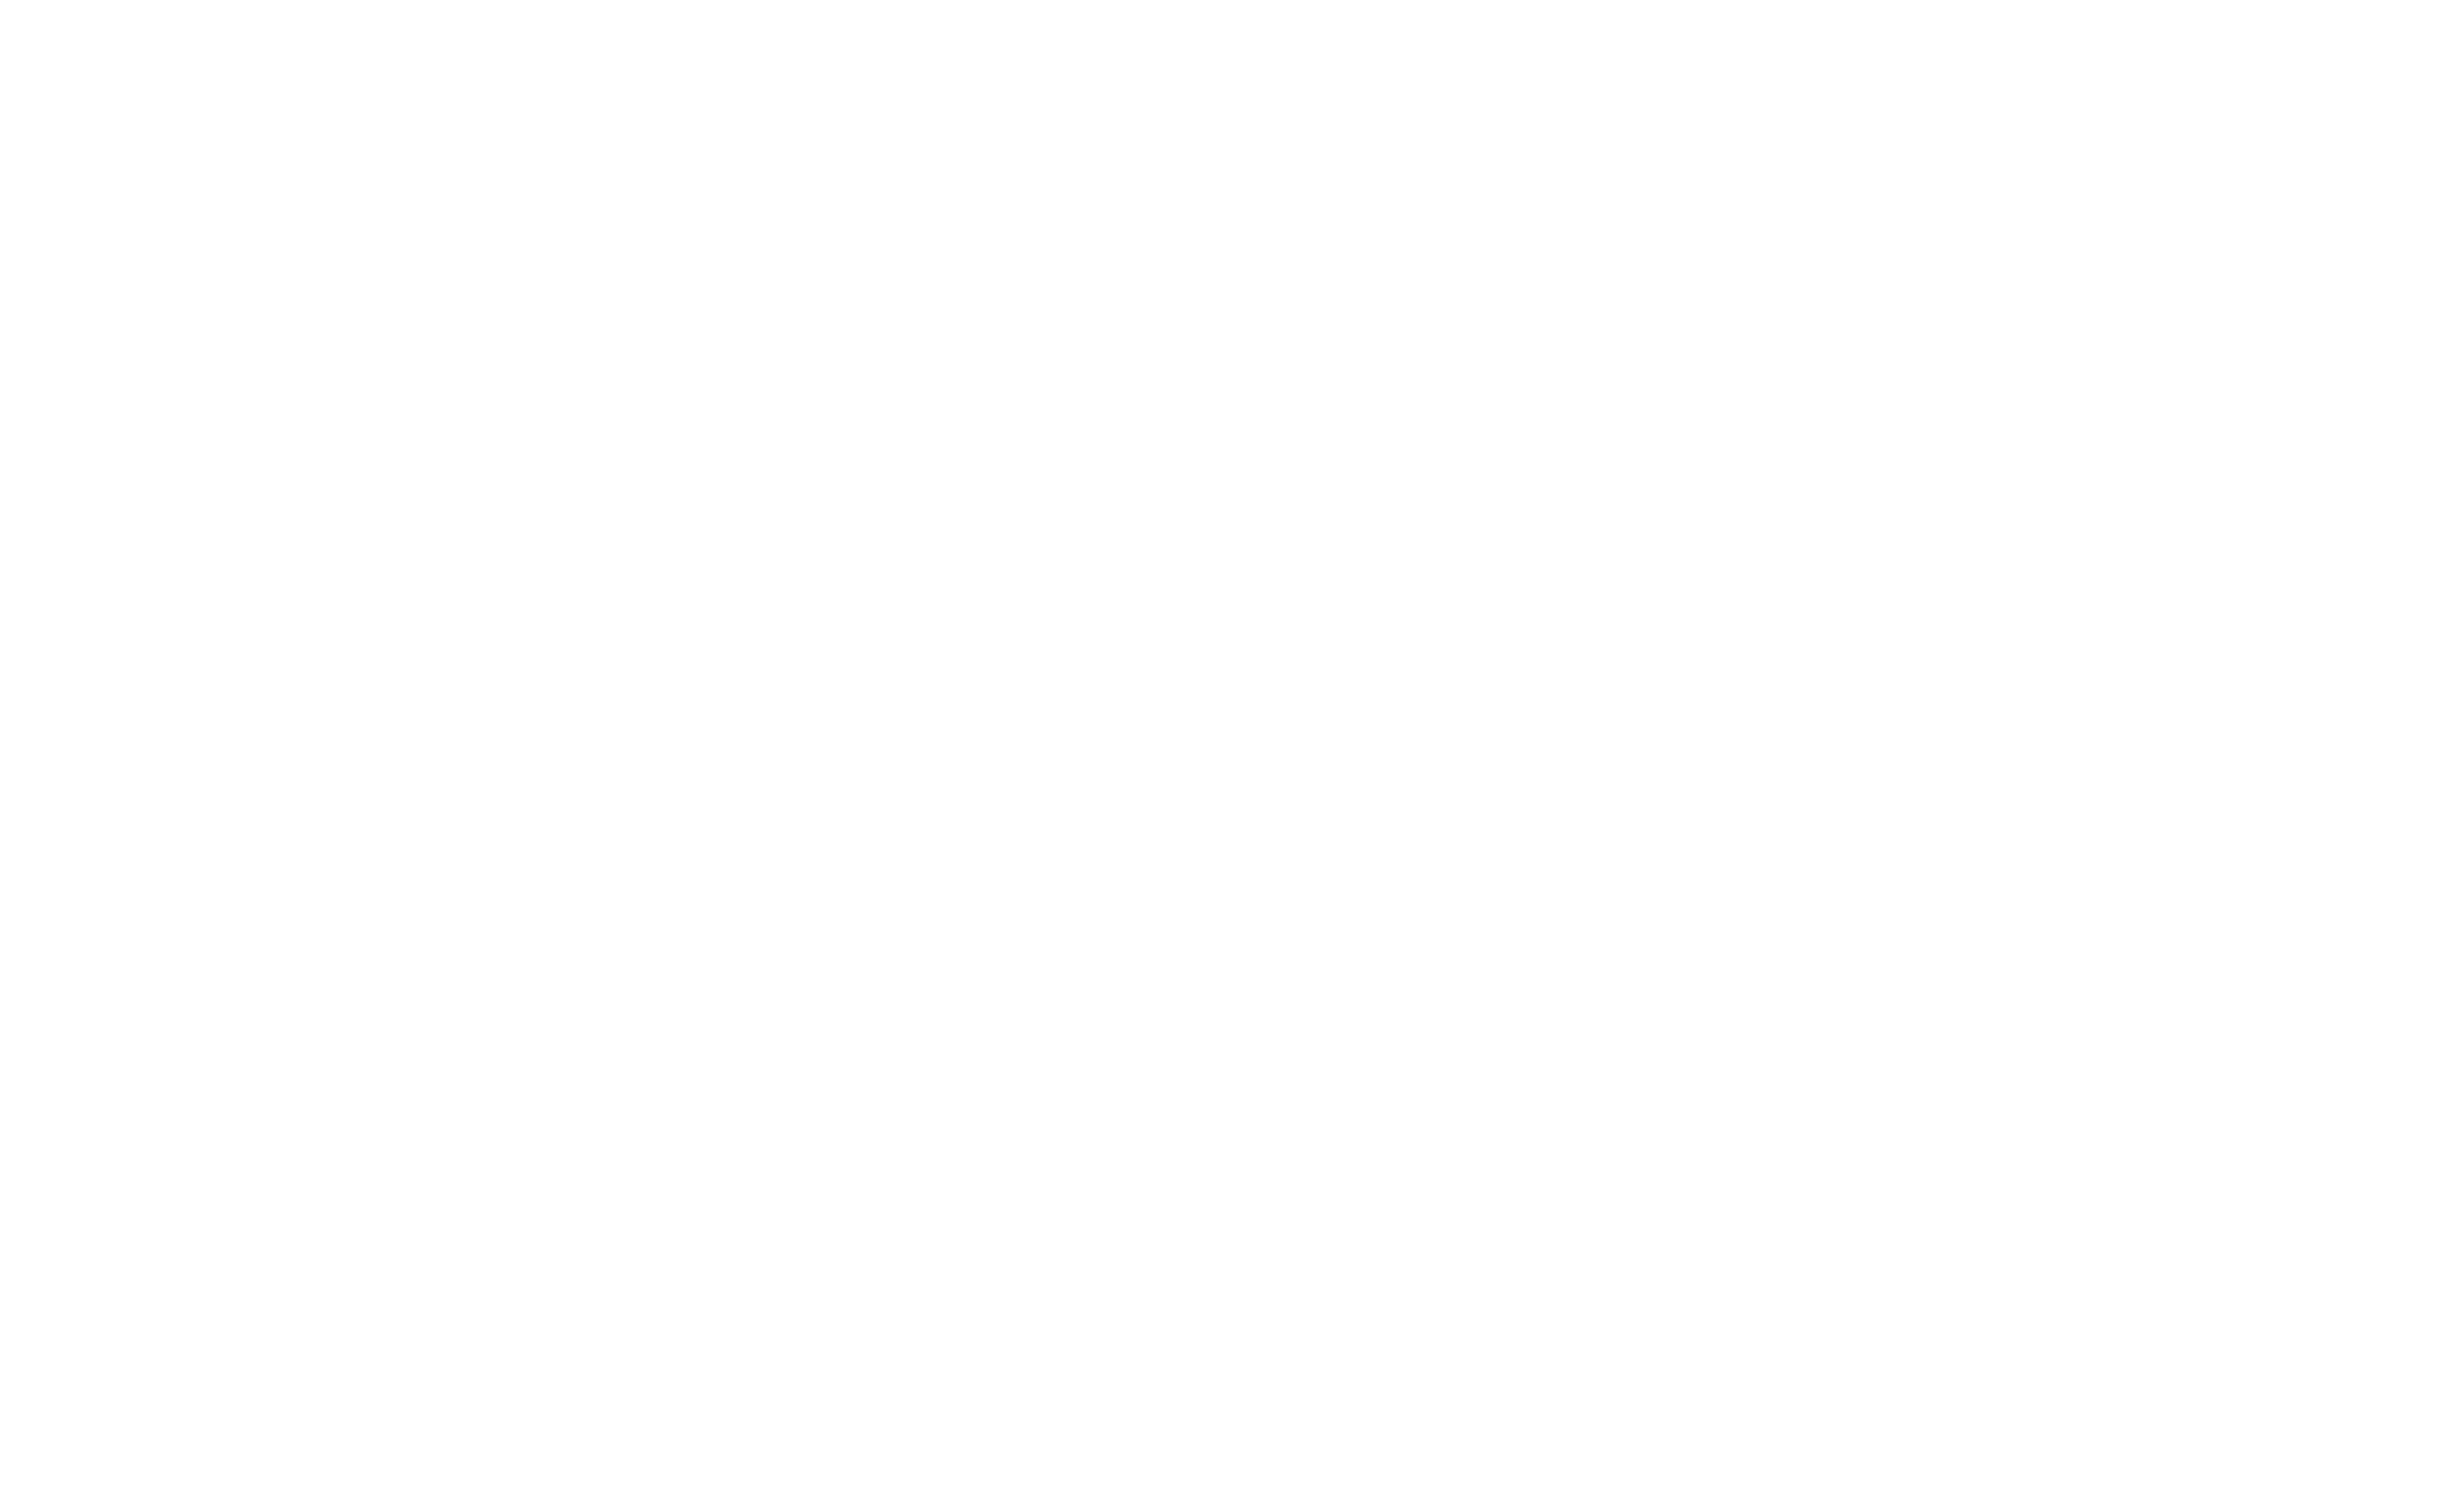 American Institute of Monterrey